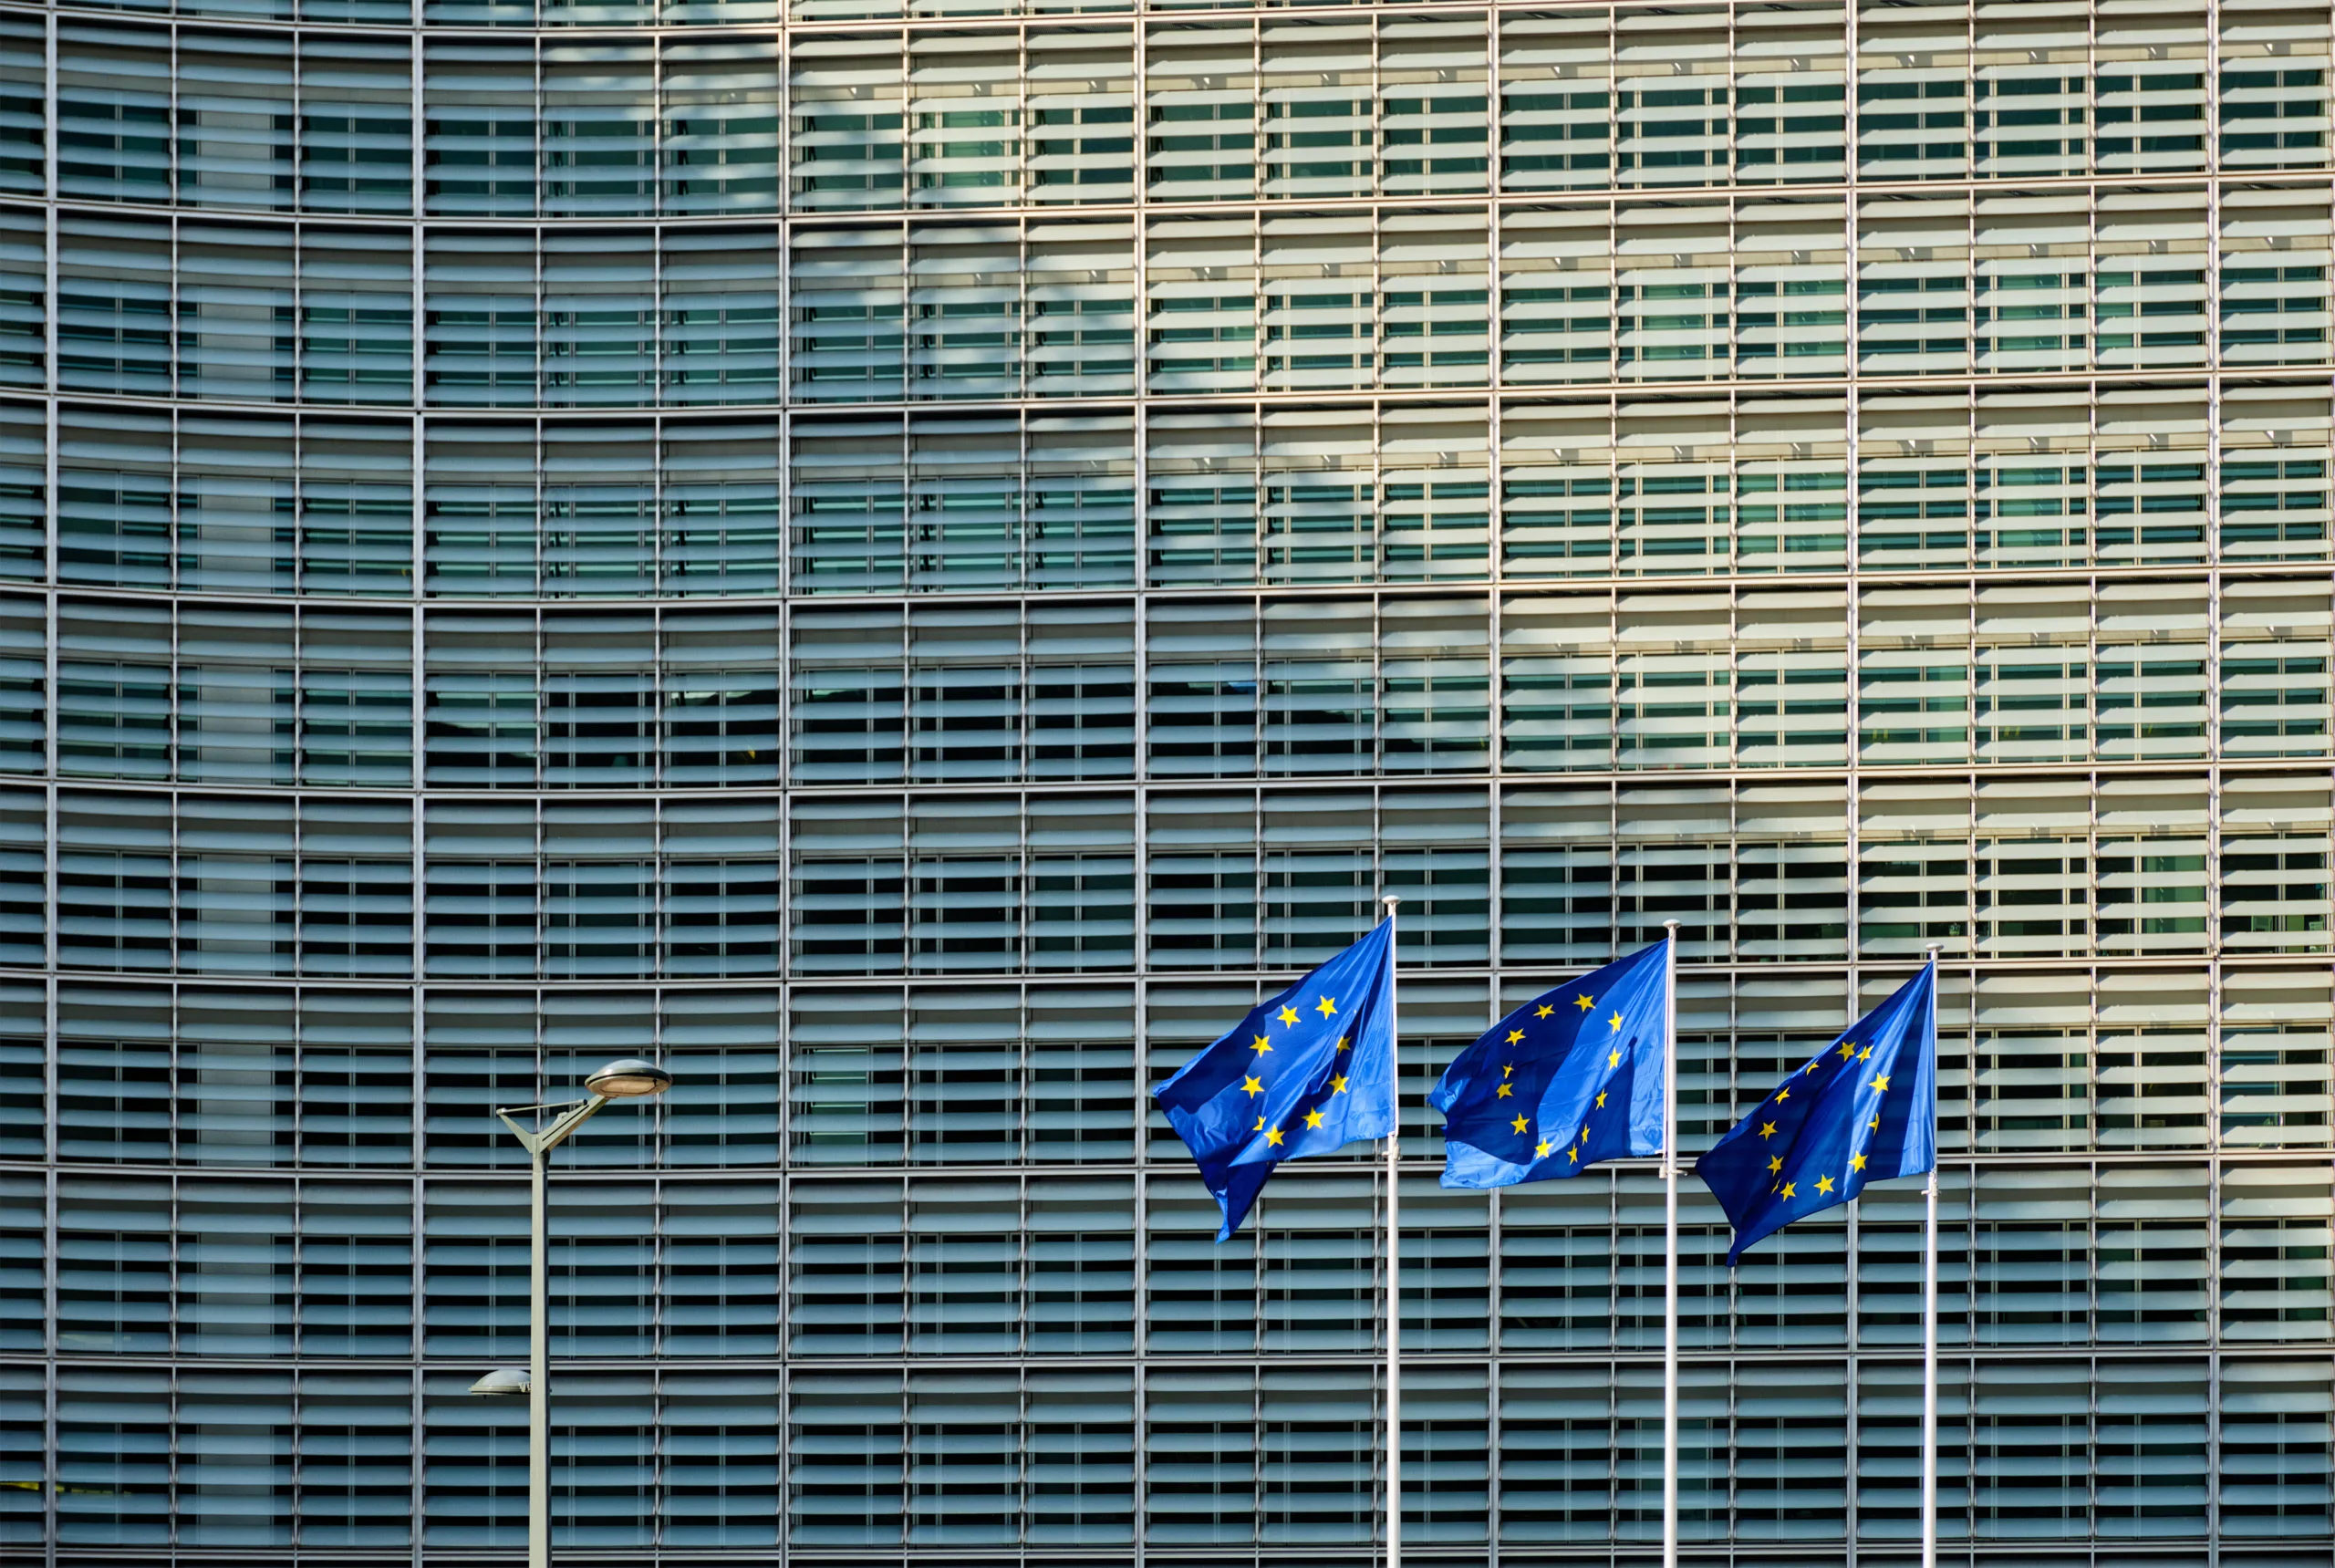 Bolsas Europeias fecham em alta com salto em Londres e recorde em Frankfurt